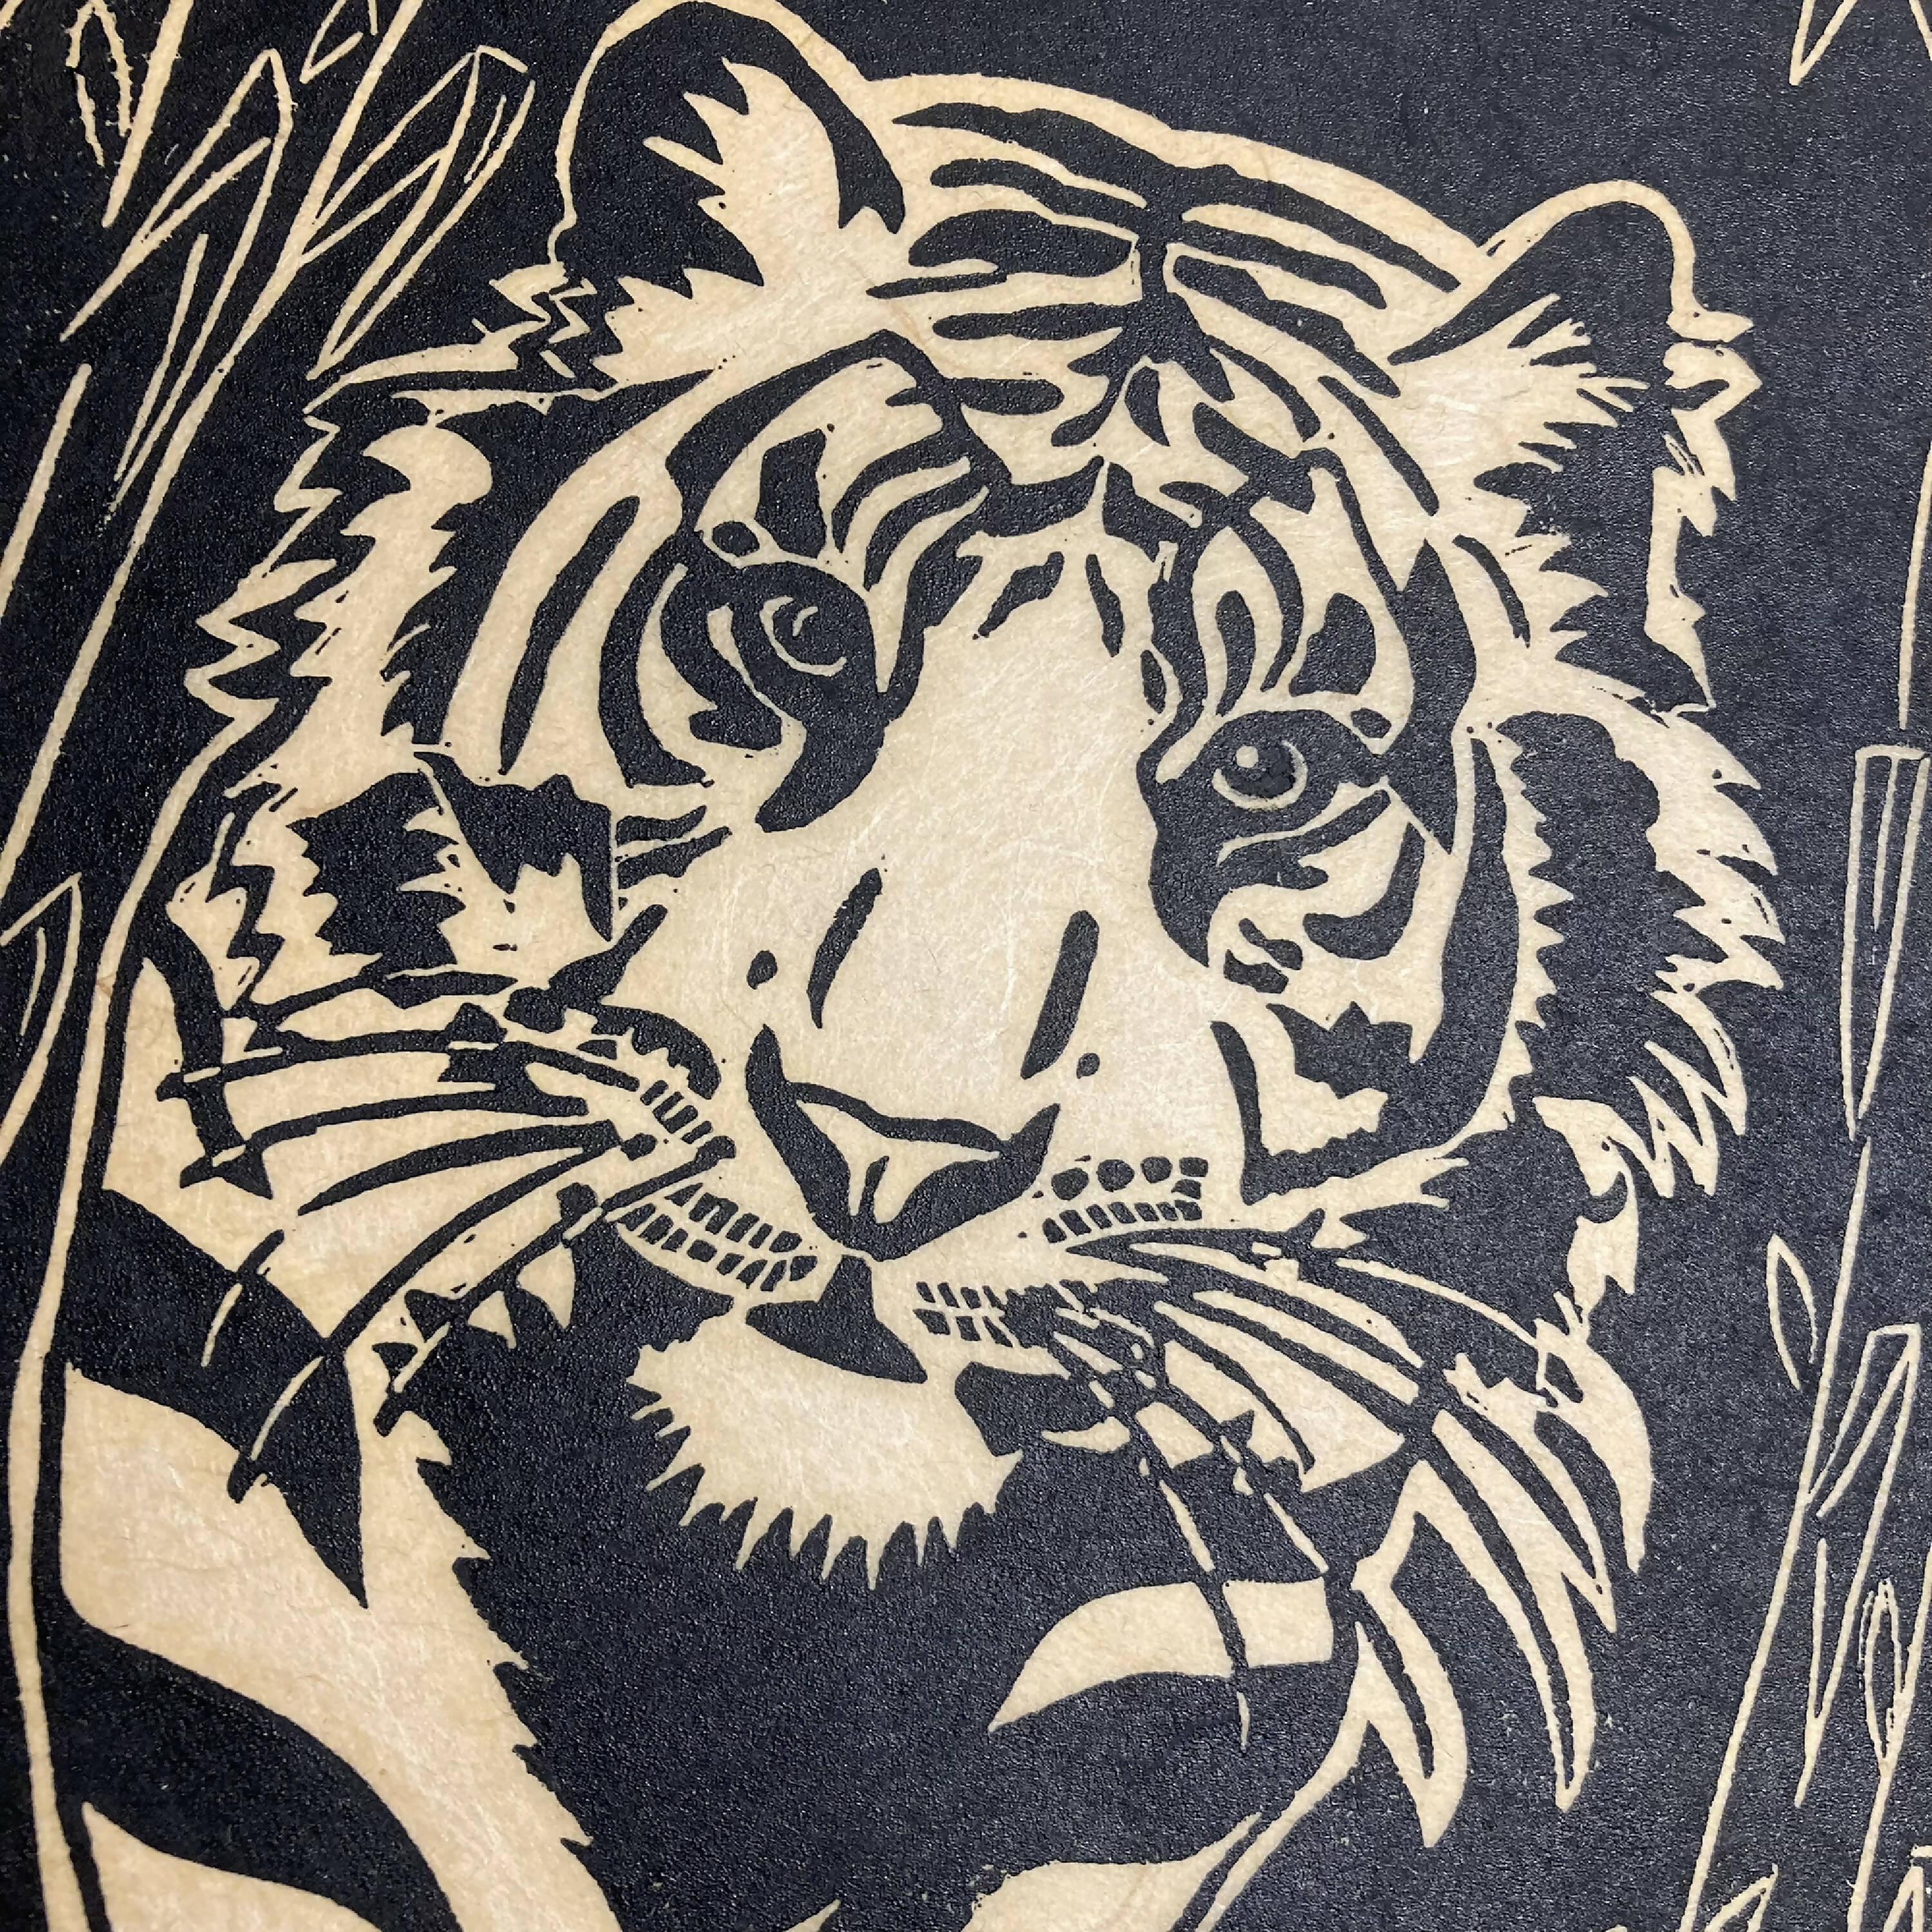 Linogravure Le tigre aux roseaux  | EMPREINTES Paris | EMPREINTES Paris